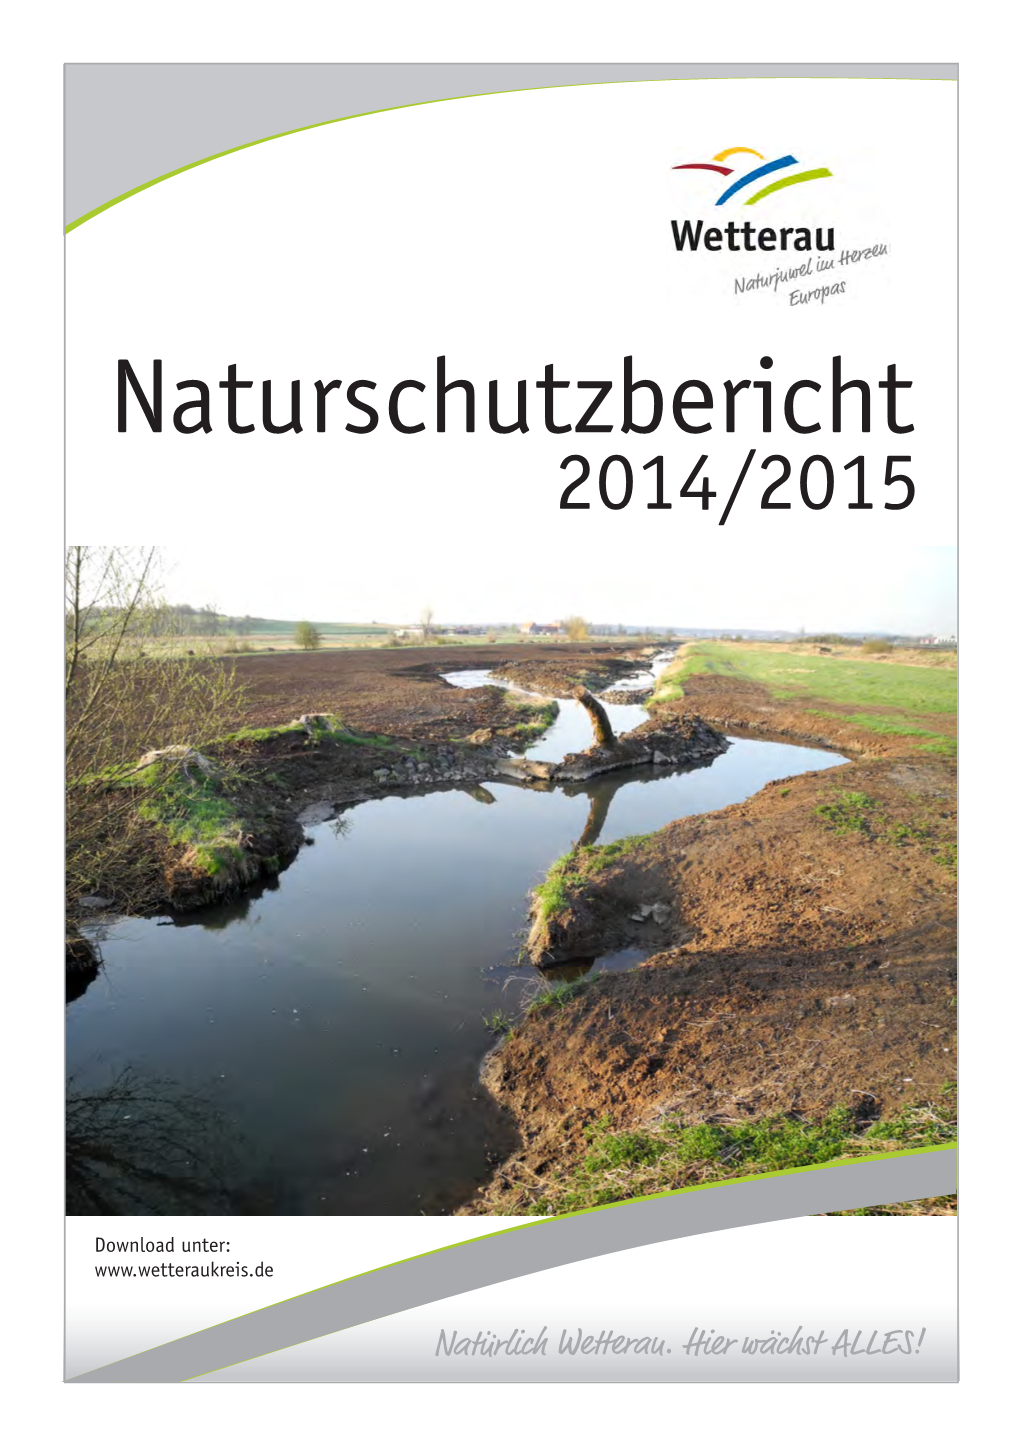 Naturschutzbericht 2014/2015